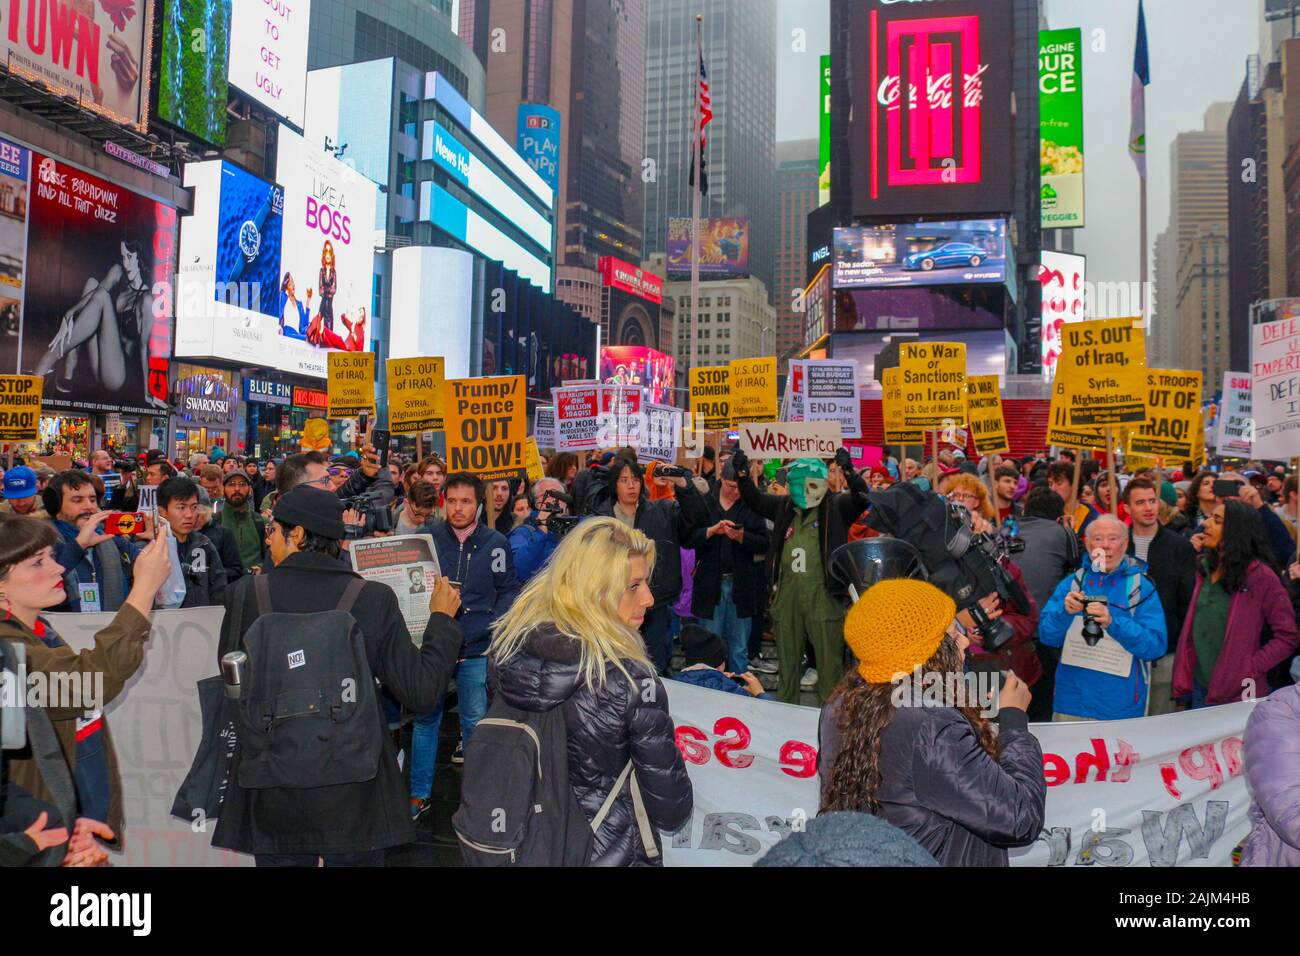 New York, NEW YORK - Januar 04, 2020: Hunderte von Menschen auf dem Times Square in New York City versammelt, Krieg gegen den Iran und Irak am 4. Januar 2020 zu protestieren. Stockfoto